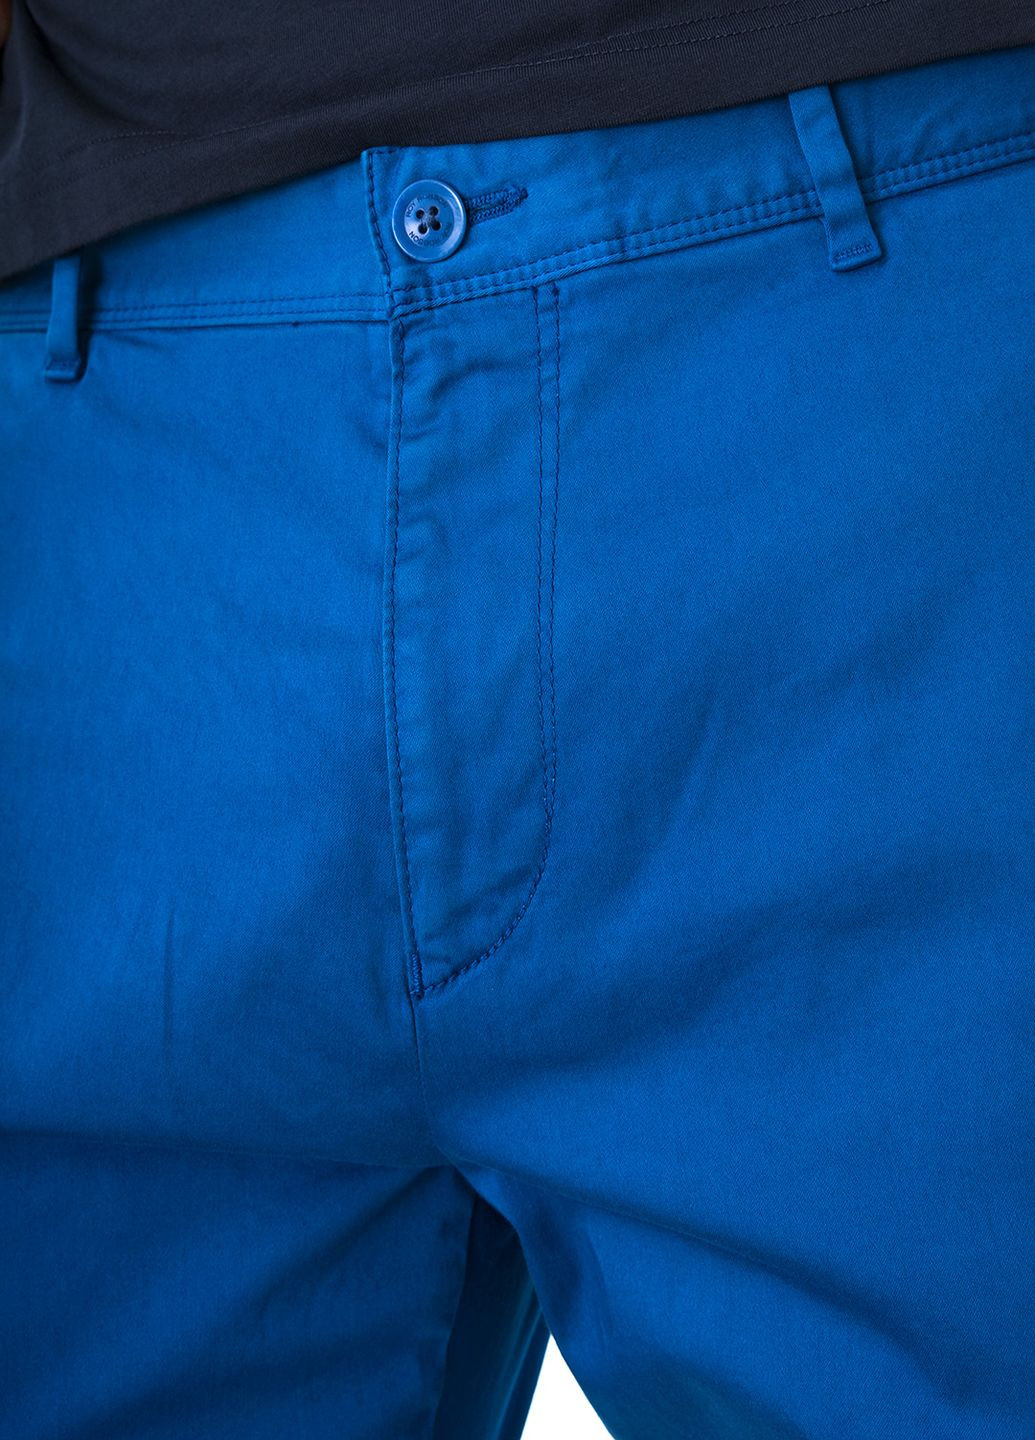 Синие летние брюки Roy Robson